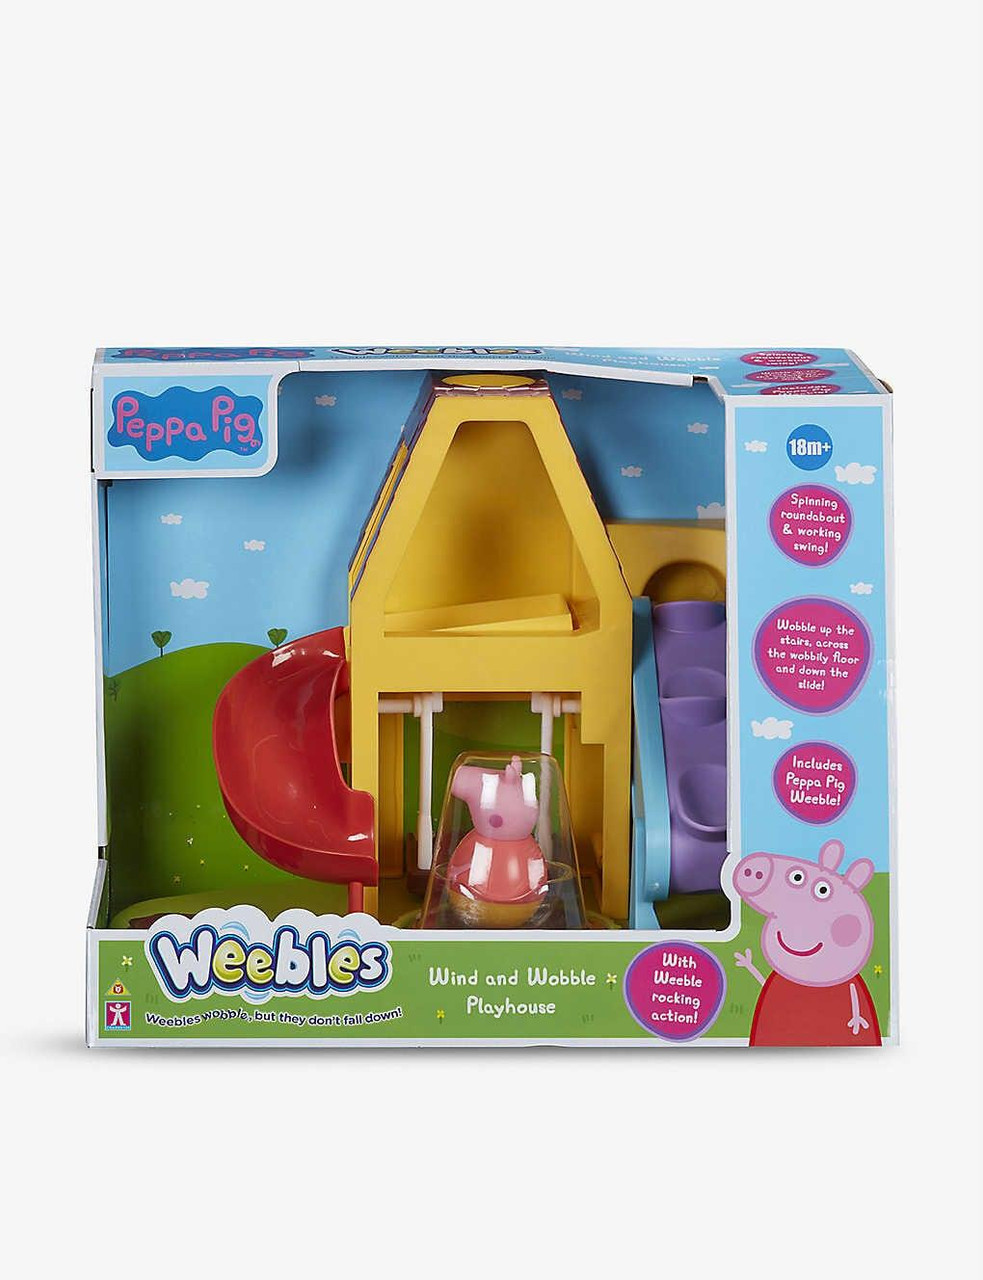 Peppa Pig Weebles Wind & Wobble Playhouse Playset